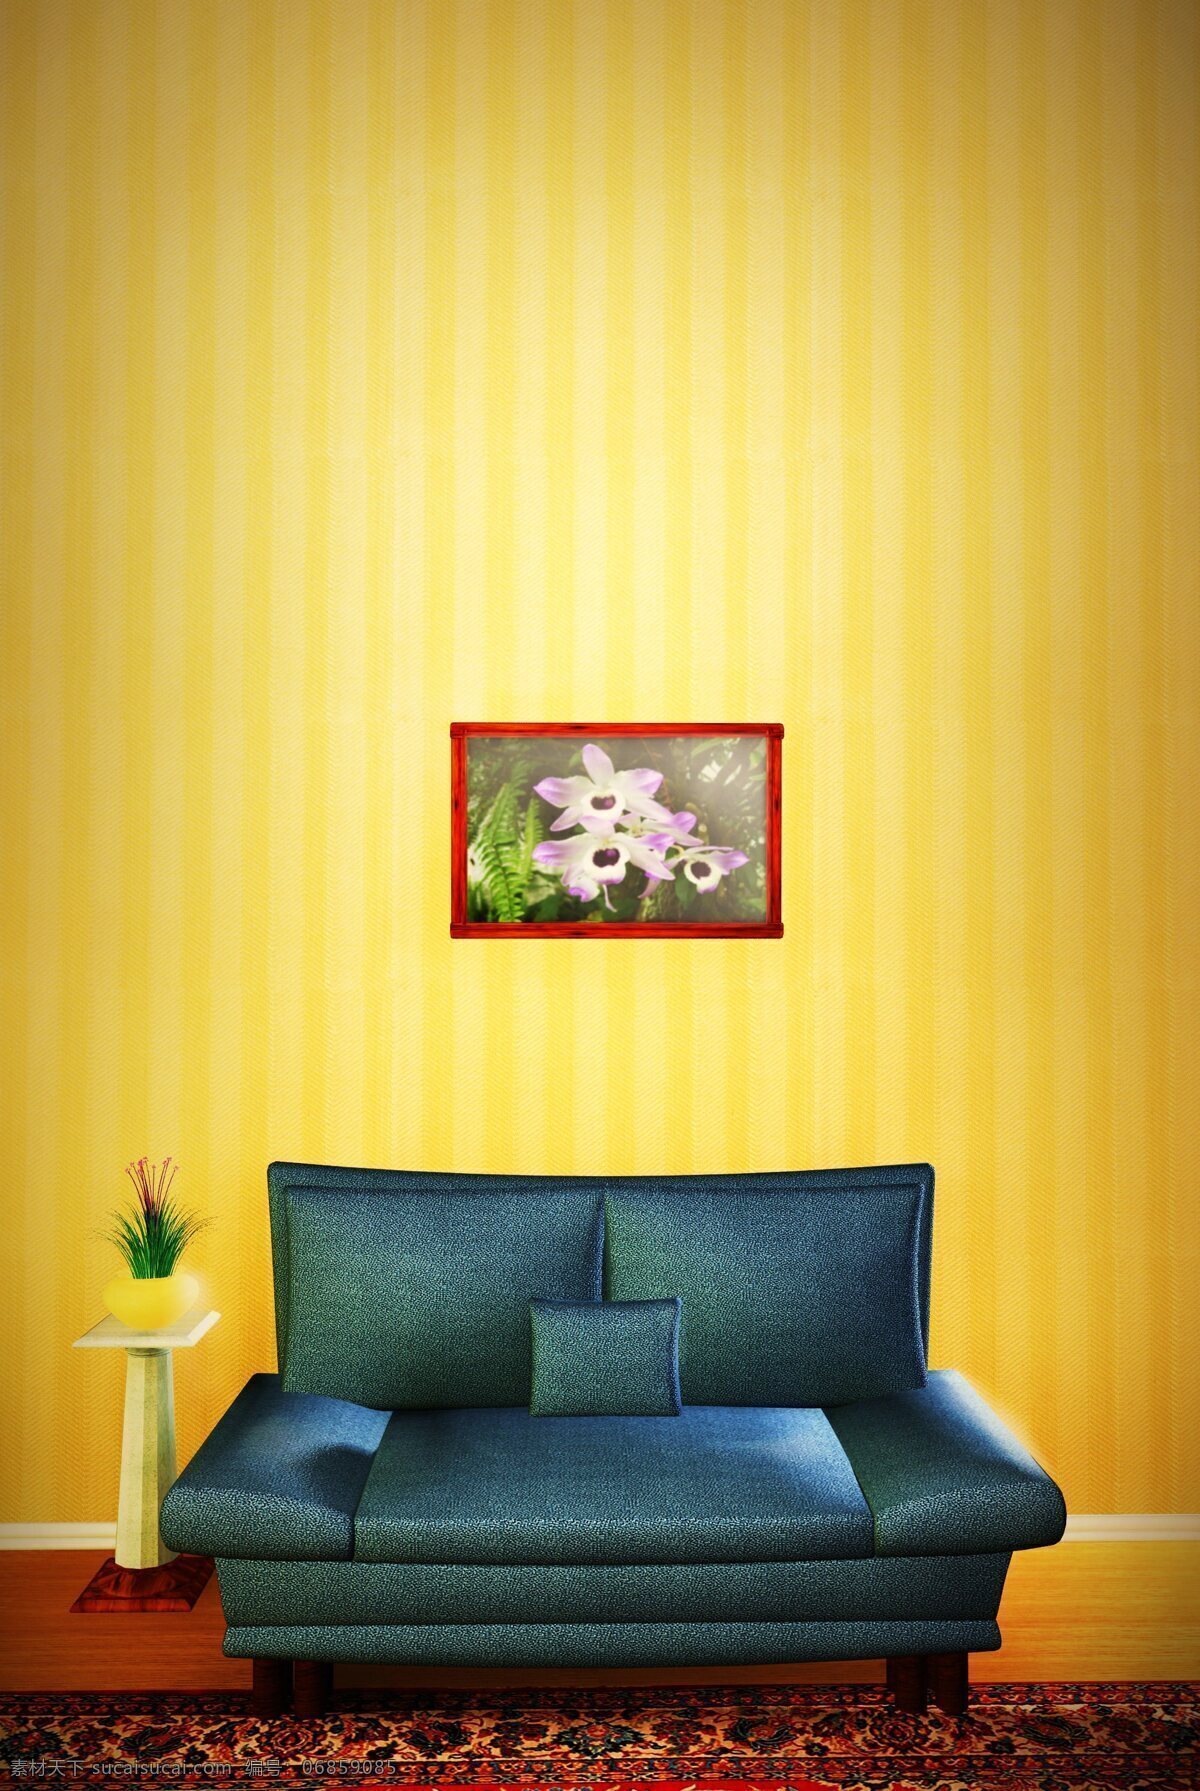 沙发背景 沙发 背景 墙 装修 装饰 环境设计 家居设计